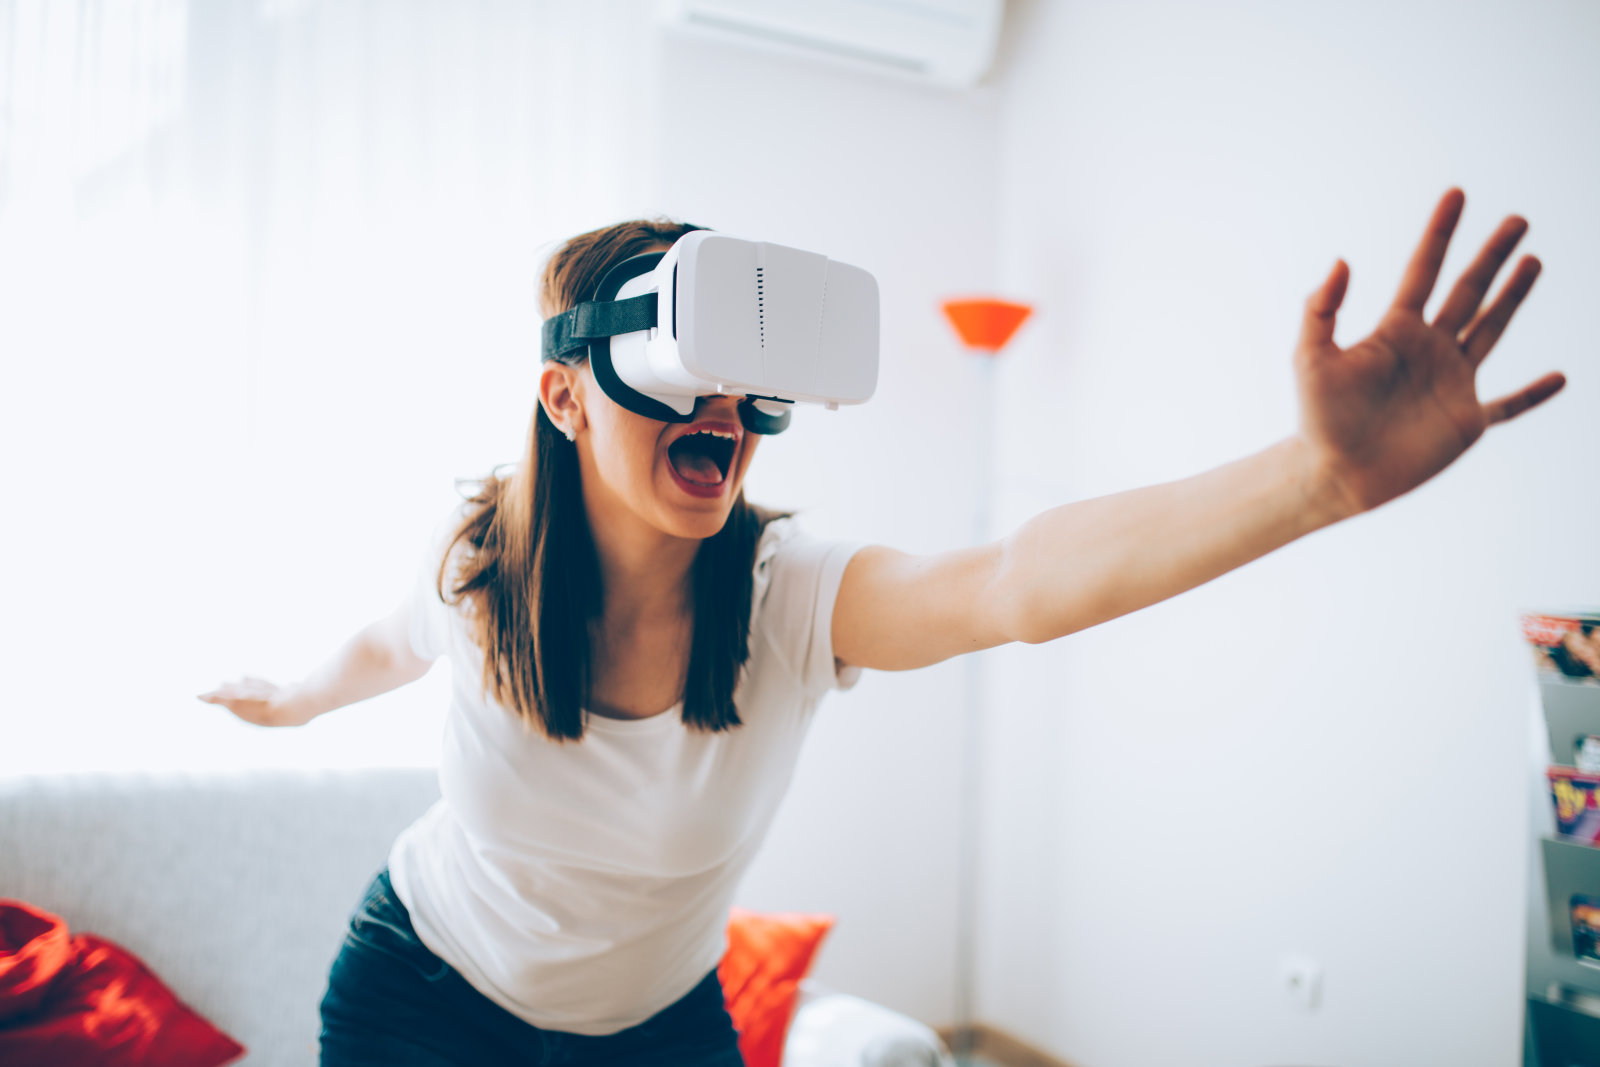 Компания LG в сотрудничестве с Valve работает над VR-гарнитурой